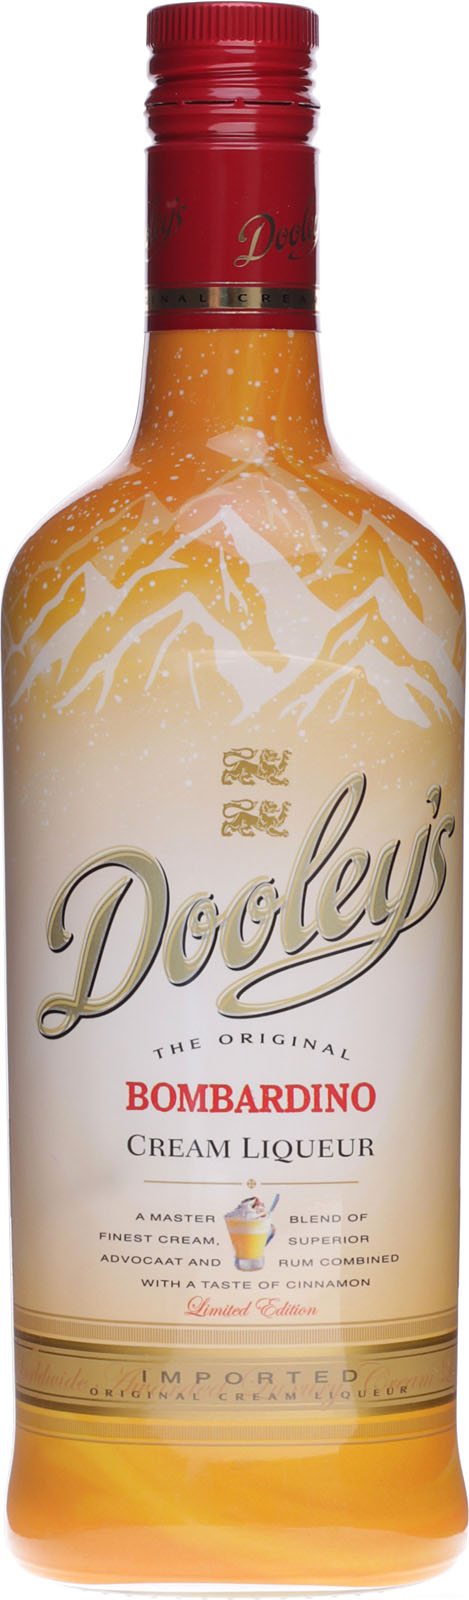 Dooleys Bombardino Cream Liqueur günstig und schnell be